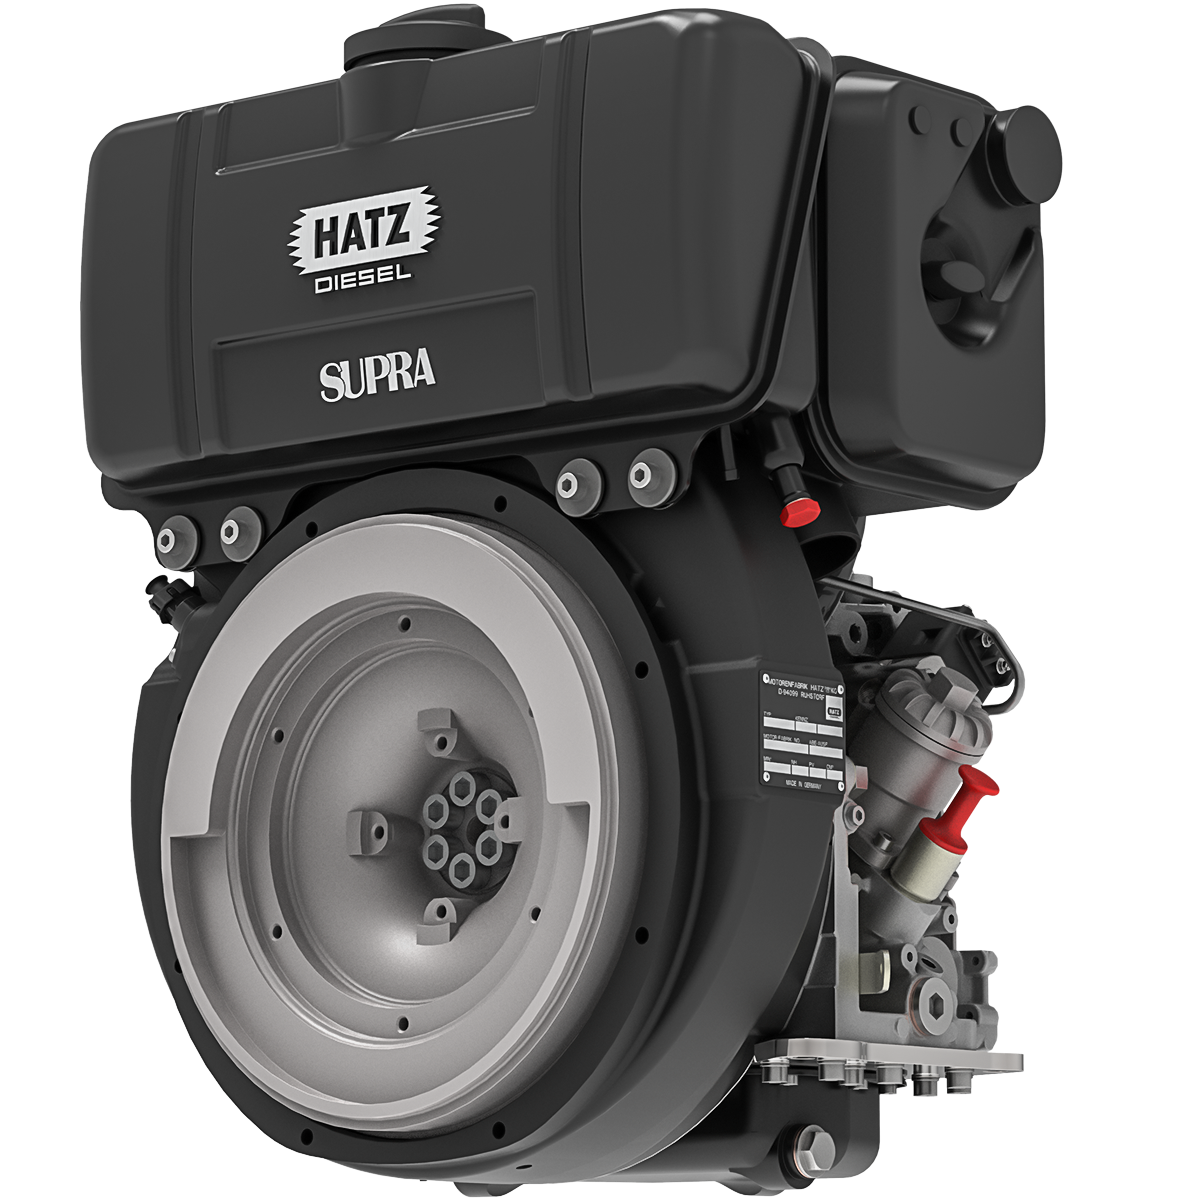 Hatz 3l41c. Hatz Diesel 2 цилиндровый. Дизель Hatz 1b20 одноцилиндровый. Двигатель Hatz Diesel. Лучшие дизельные моторы